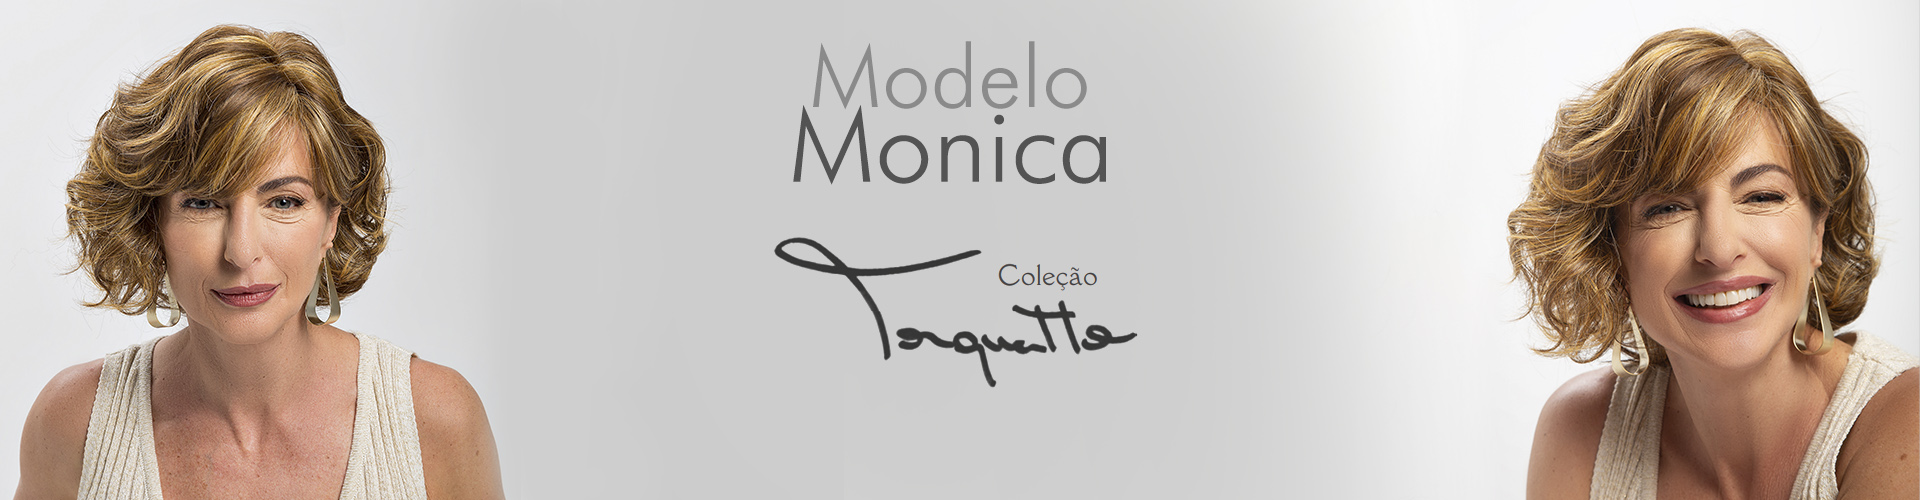 Modelo Monica